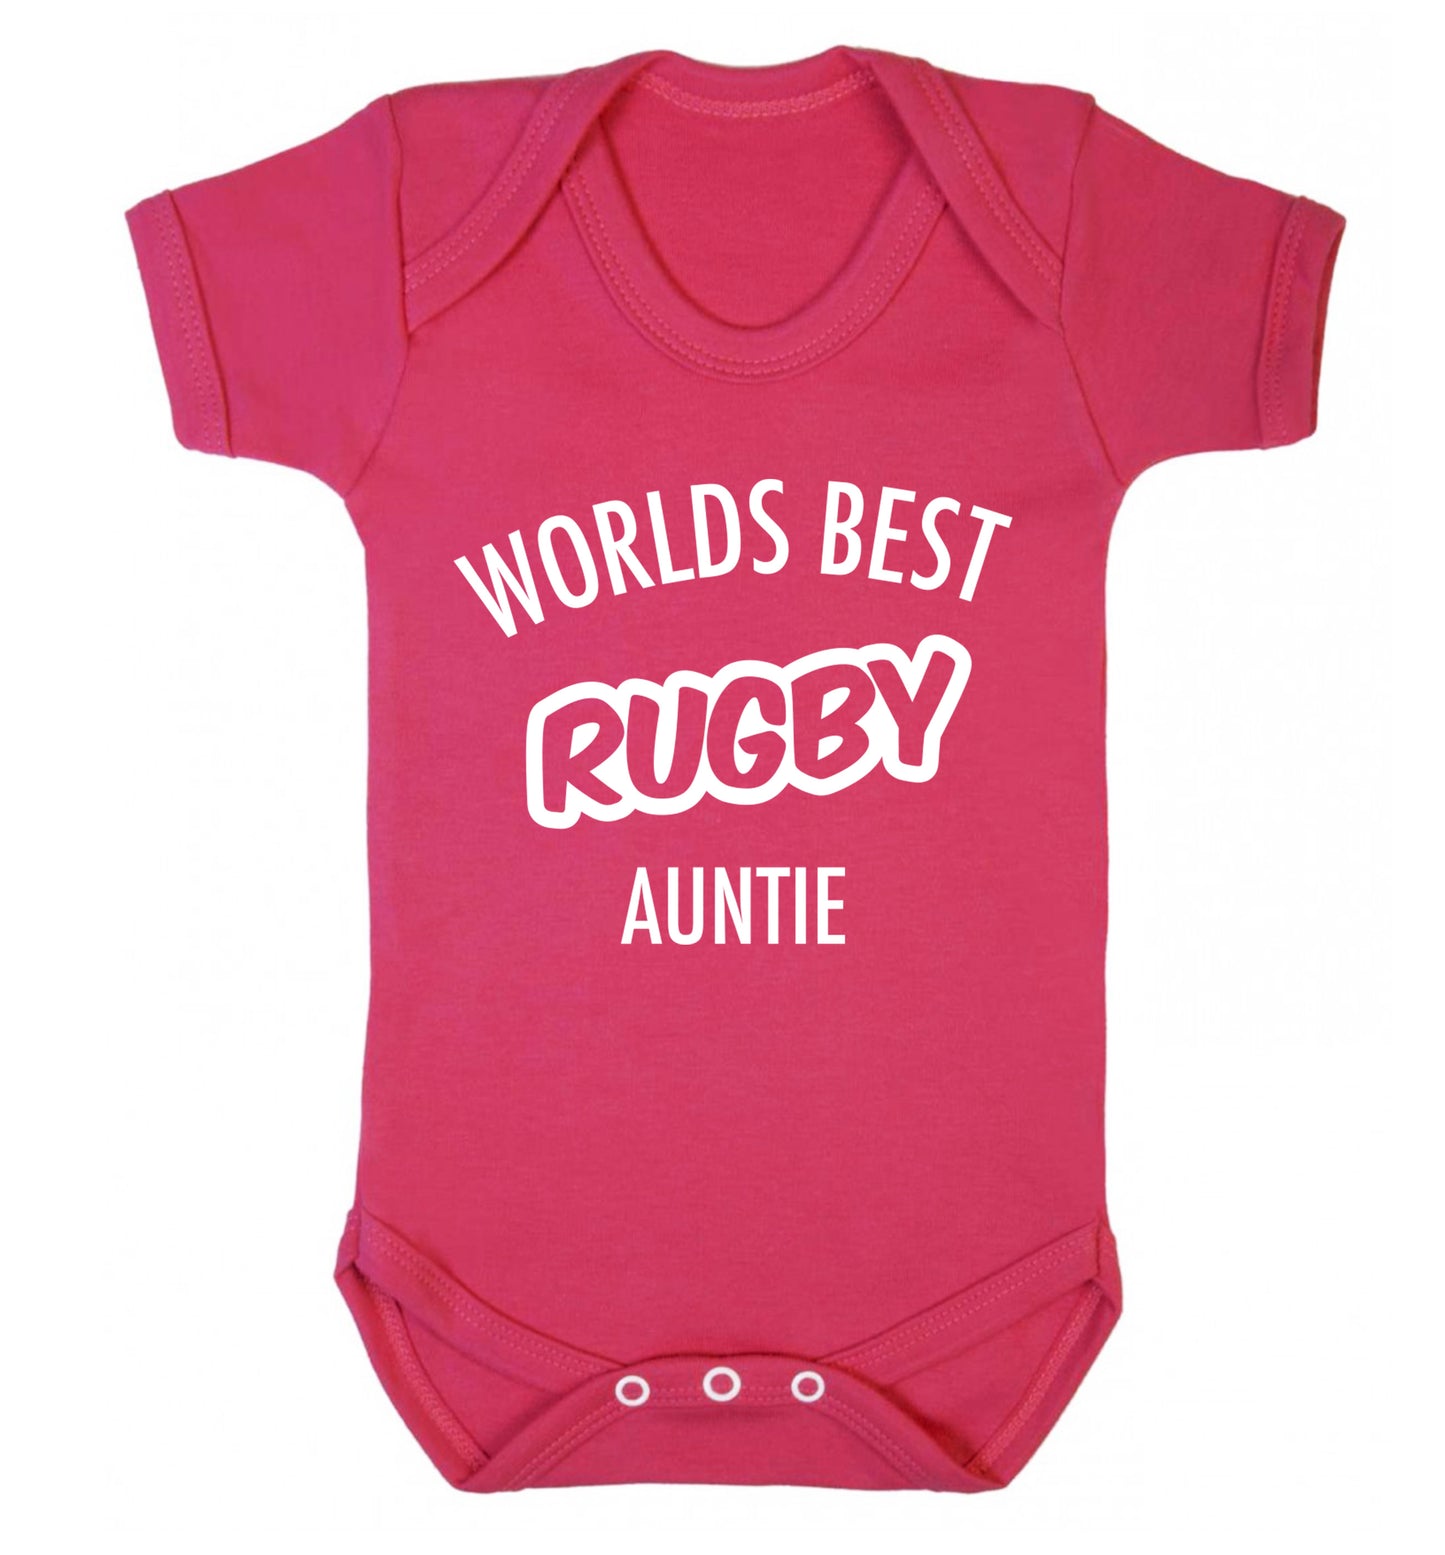 Worlds best rugby auntie Baby Vest dark pink 18-24 months